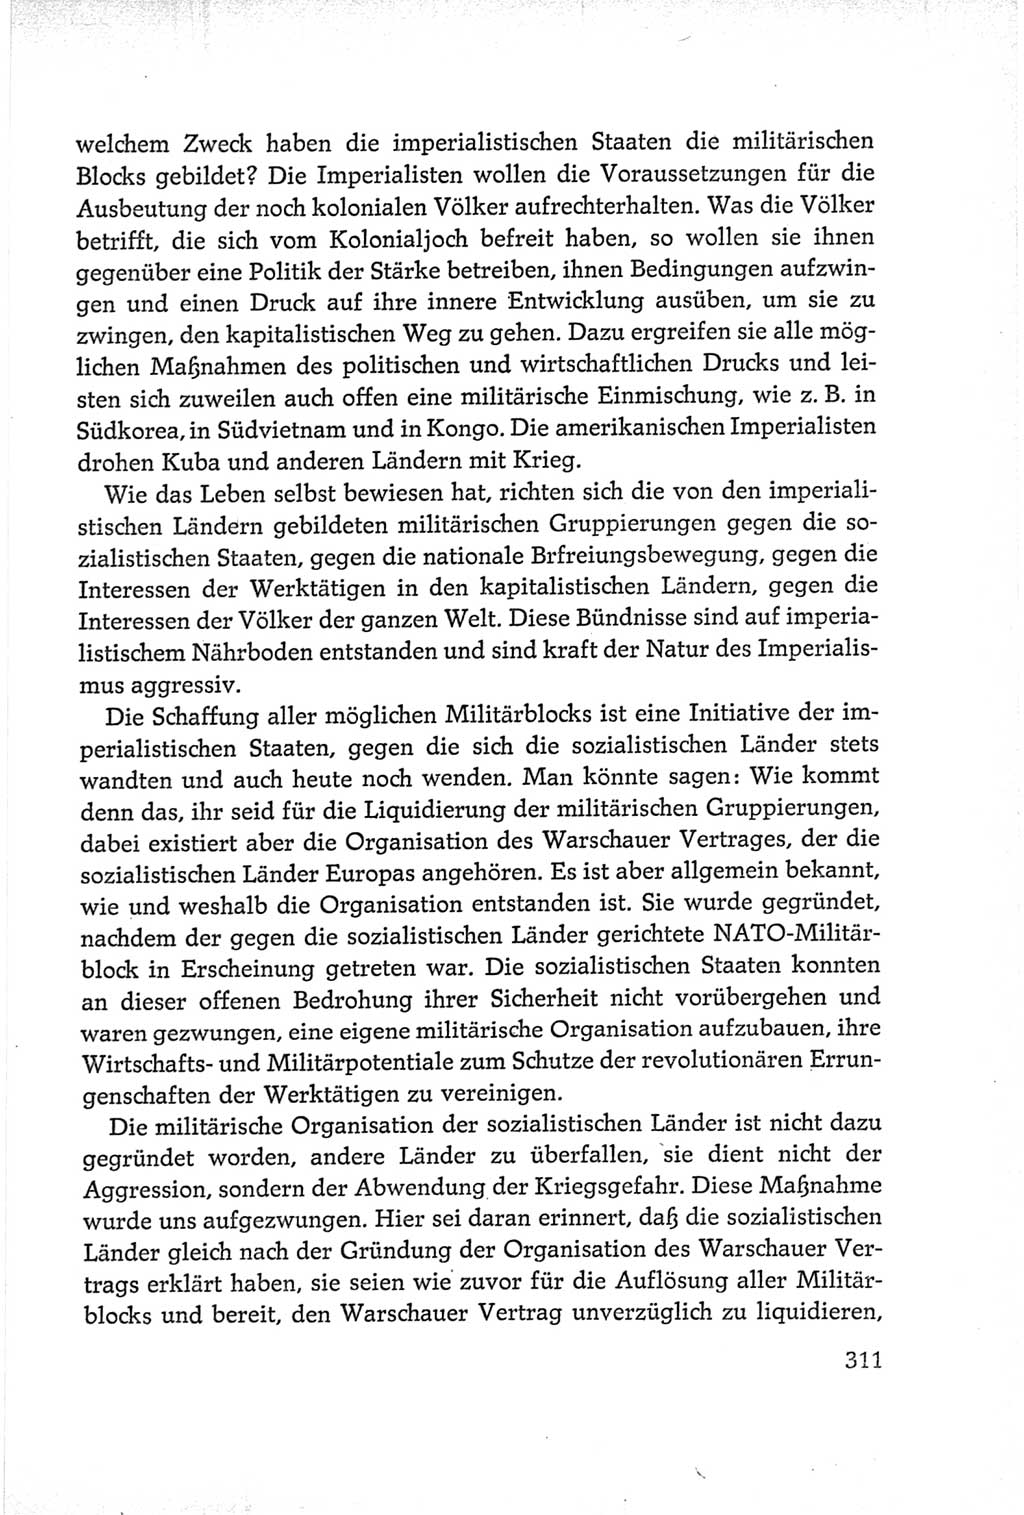 Protokoll der Verhandlungen des Ⅵ. Parteitages der Sozialistischen Einheitspartei Deutschlands (SED) [Deutsche Demokratische Republik (DDR)] 1963, Band Ⅰ, Seite 311 (Prot. Verh. Ⅵ. PT SED DDR 1963, Bd. Ⅰ, S. 311)